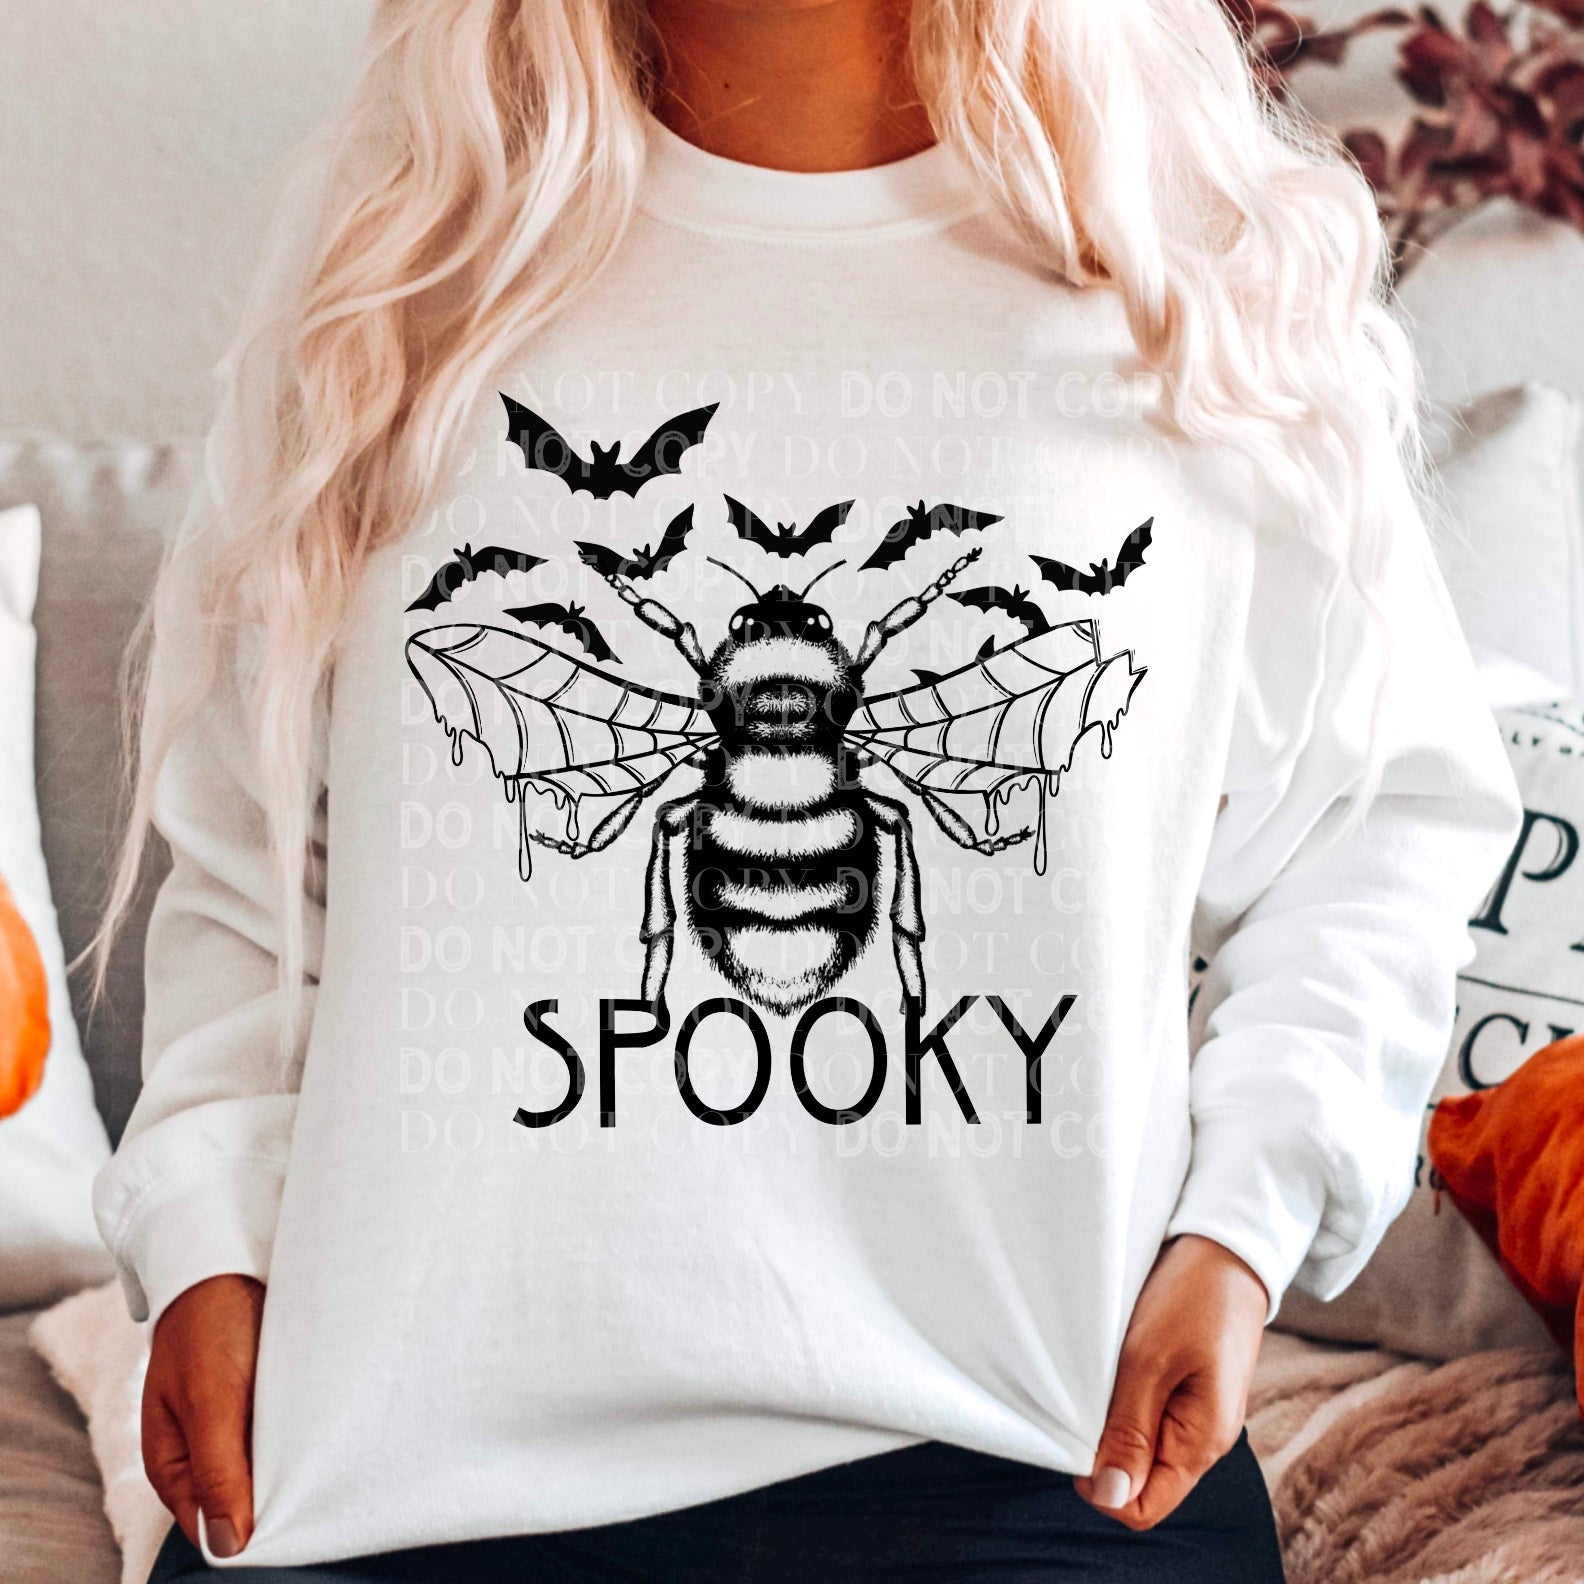 Bee Spooky  Cerra's Shop Creates   